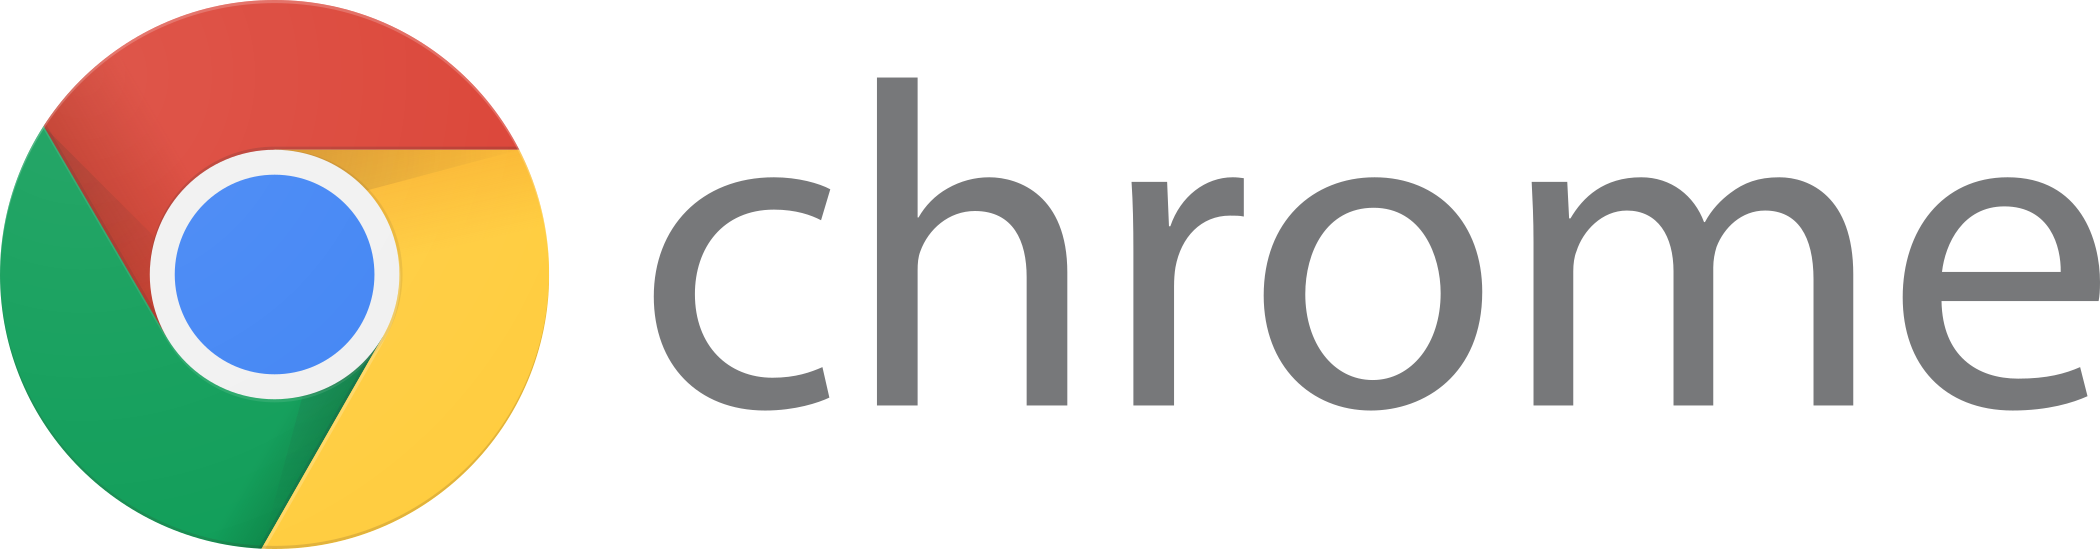 google chrome logo 3 - Google Chrome Logo